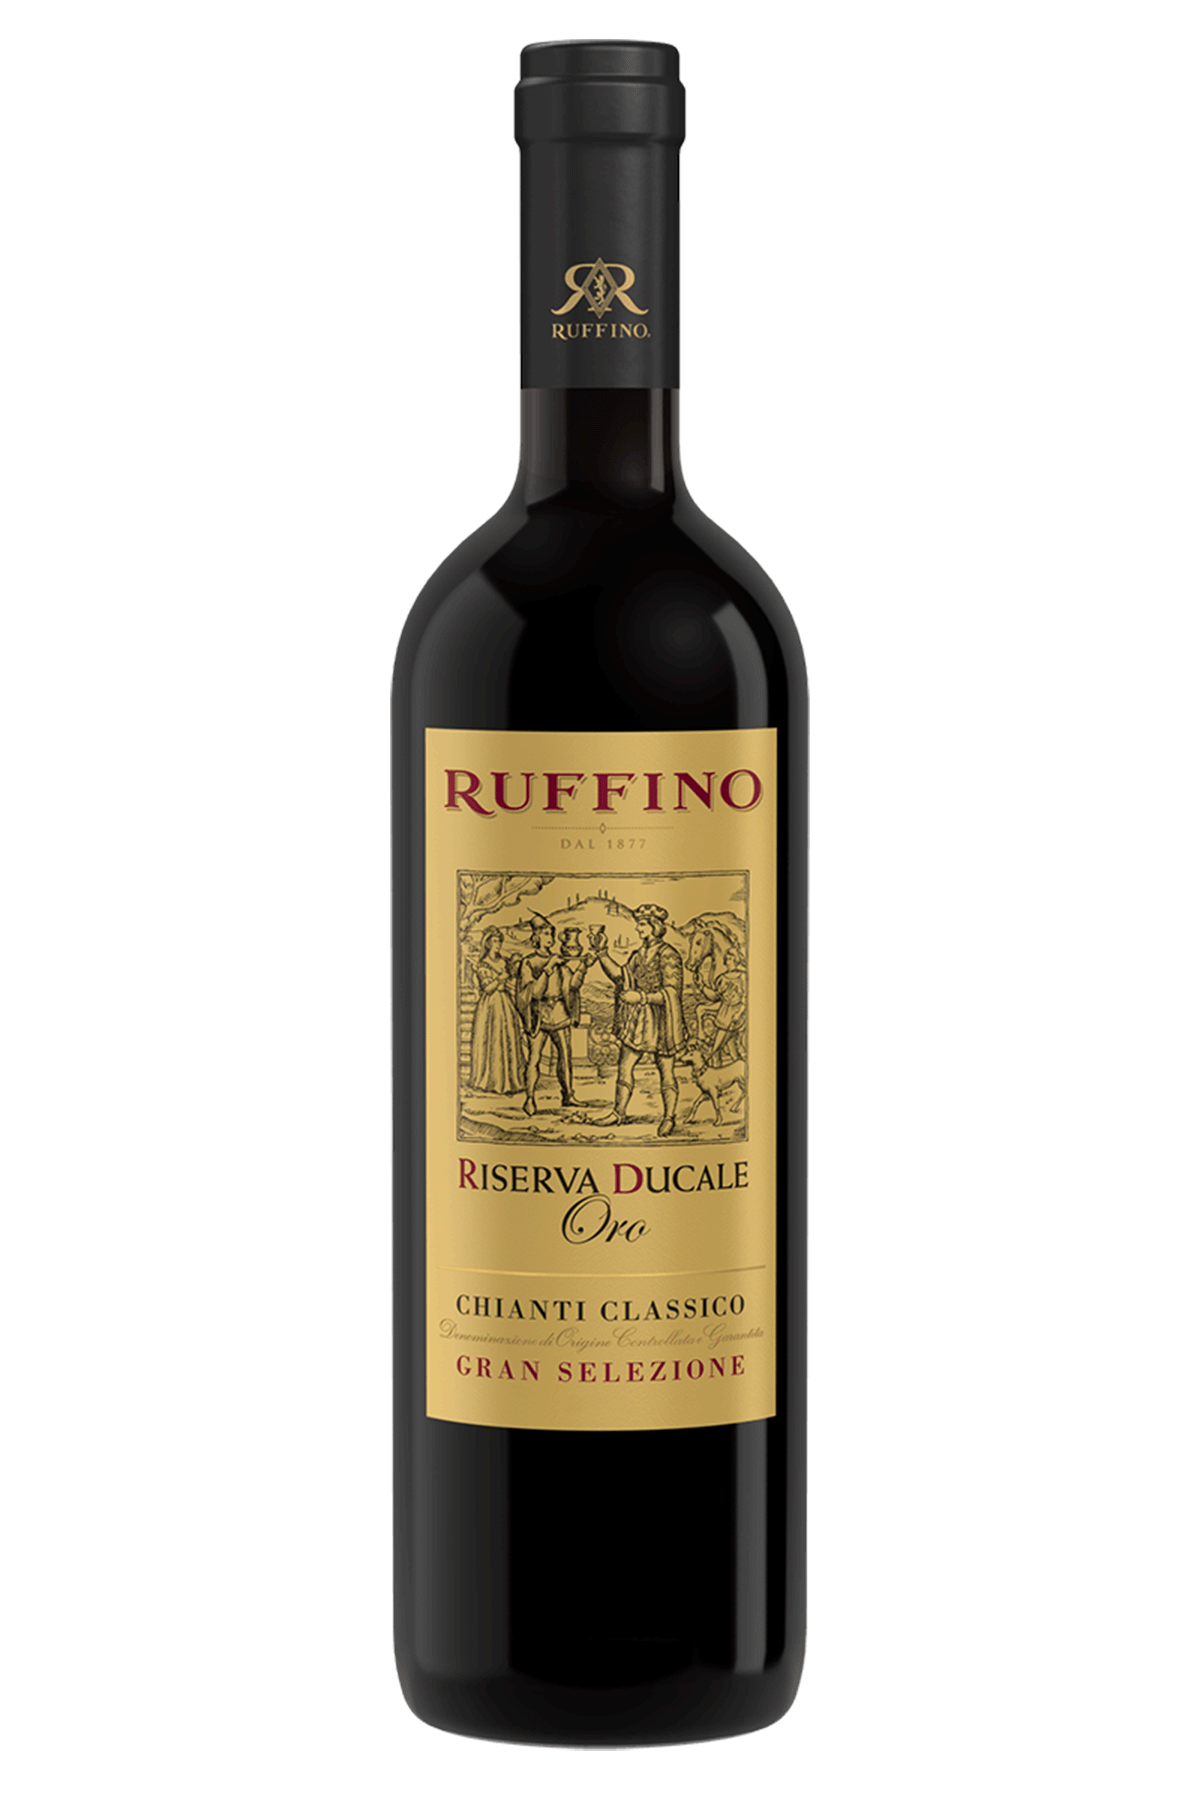 ruffino wine bottle